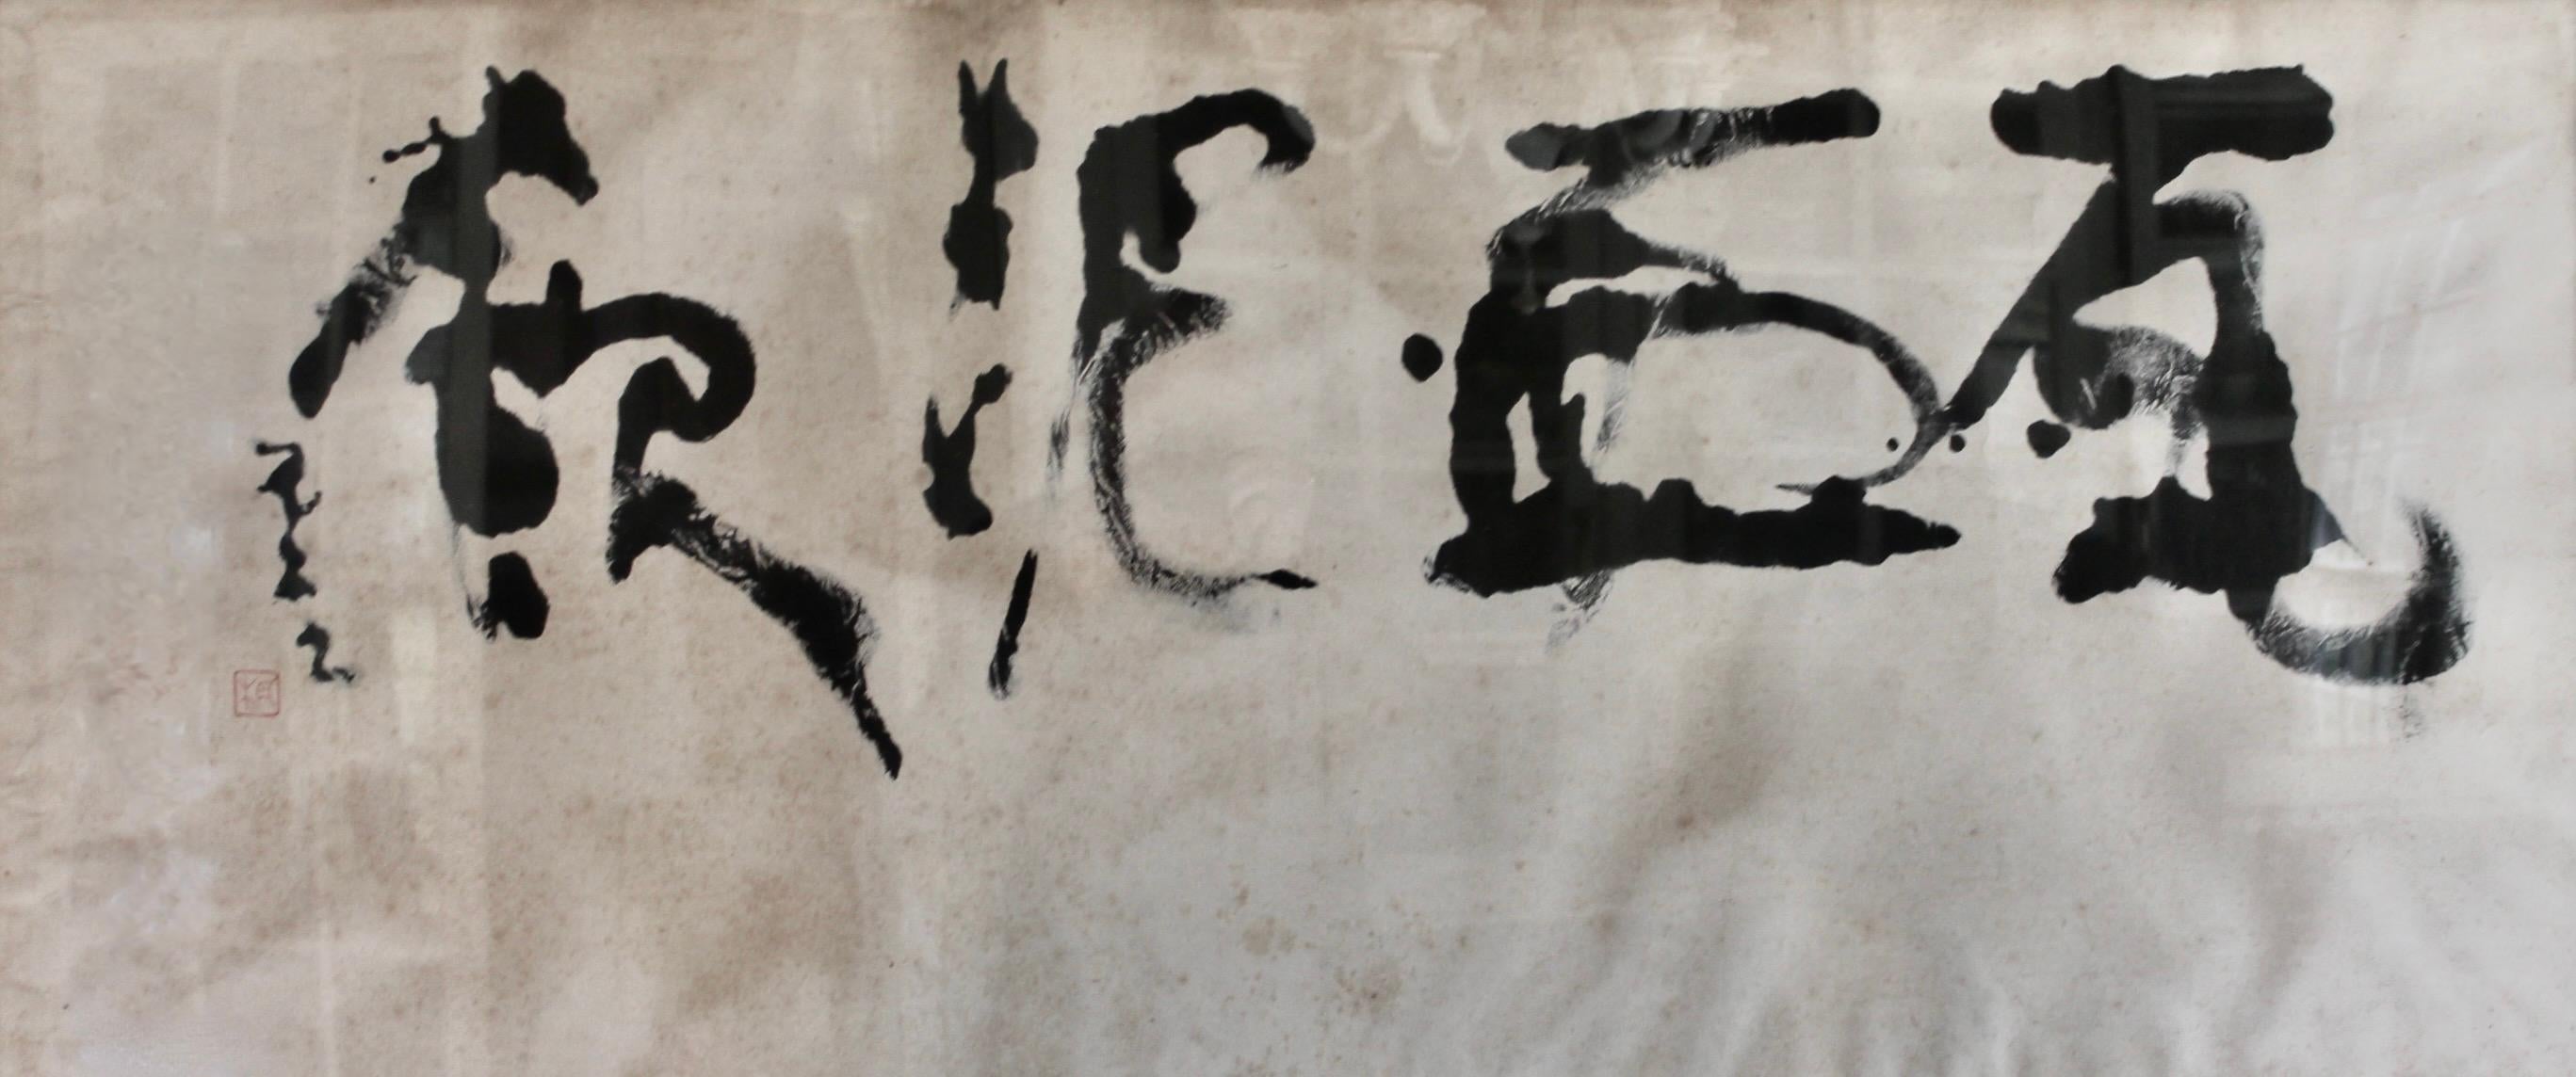 Gaboku Ogawa 'Abstract Japanese Calligraphy' MOMA 1953 For Sale 3